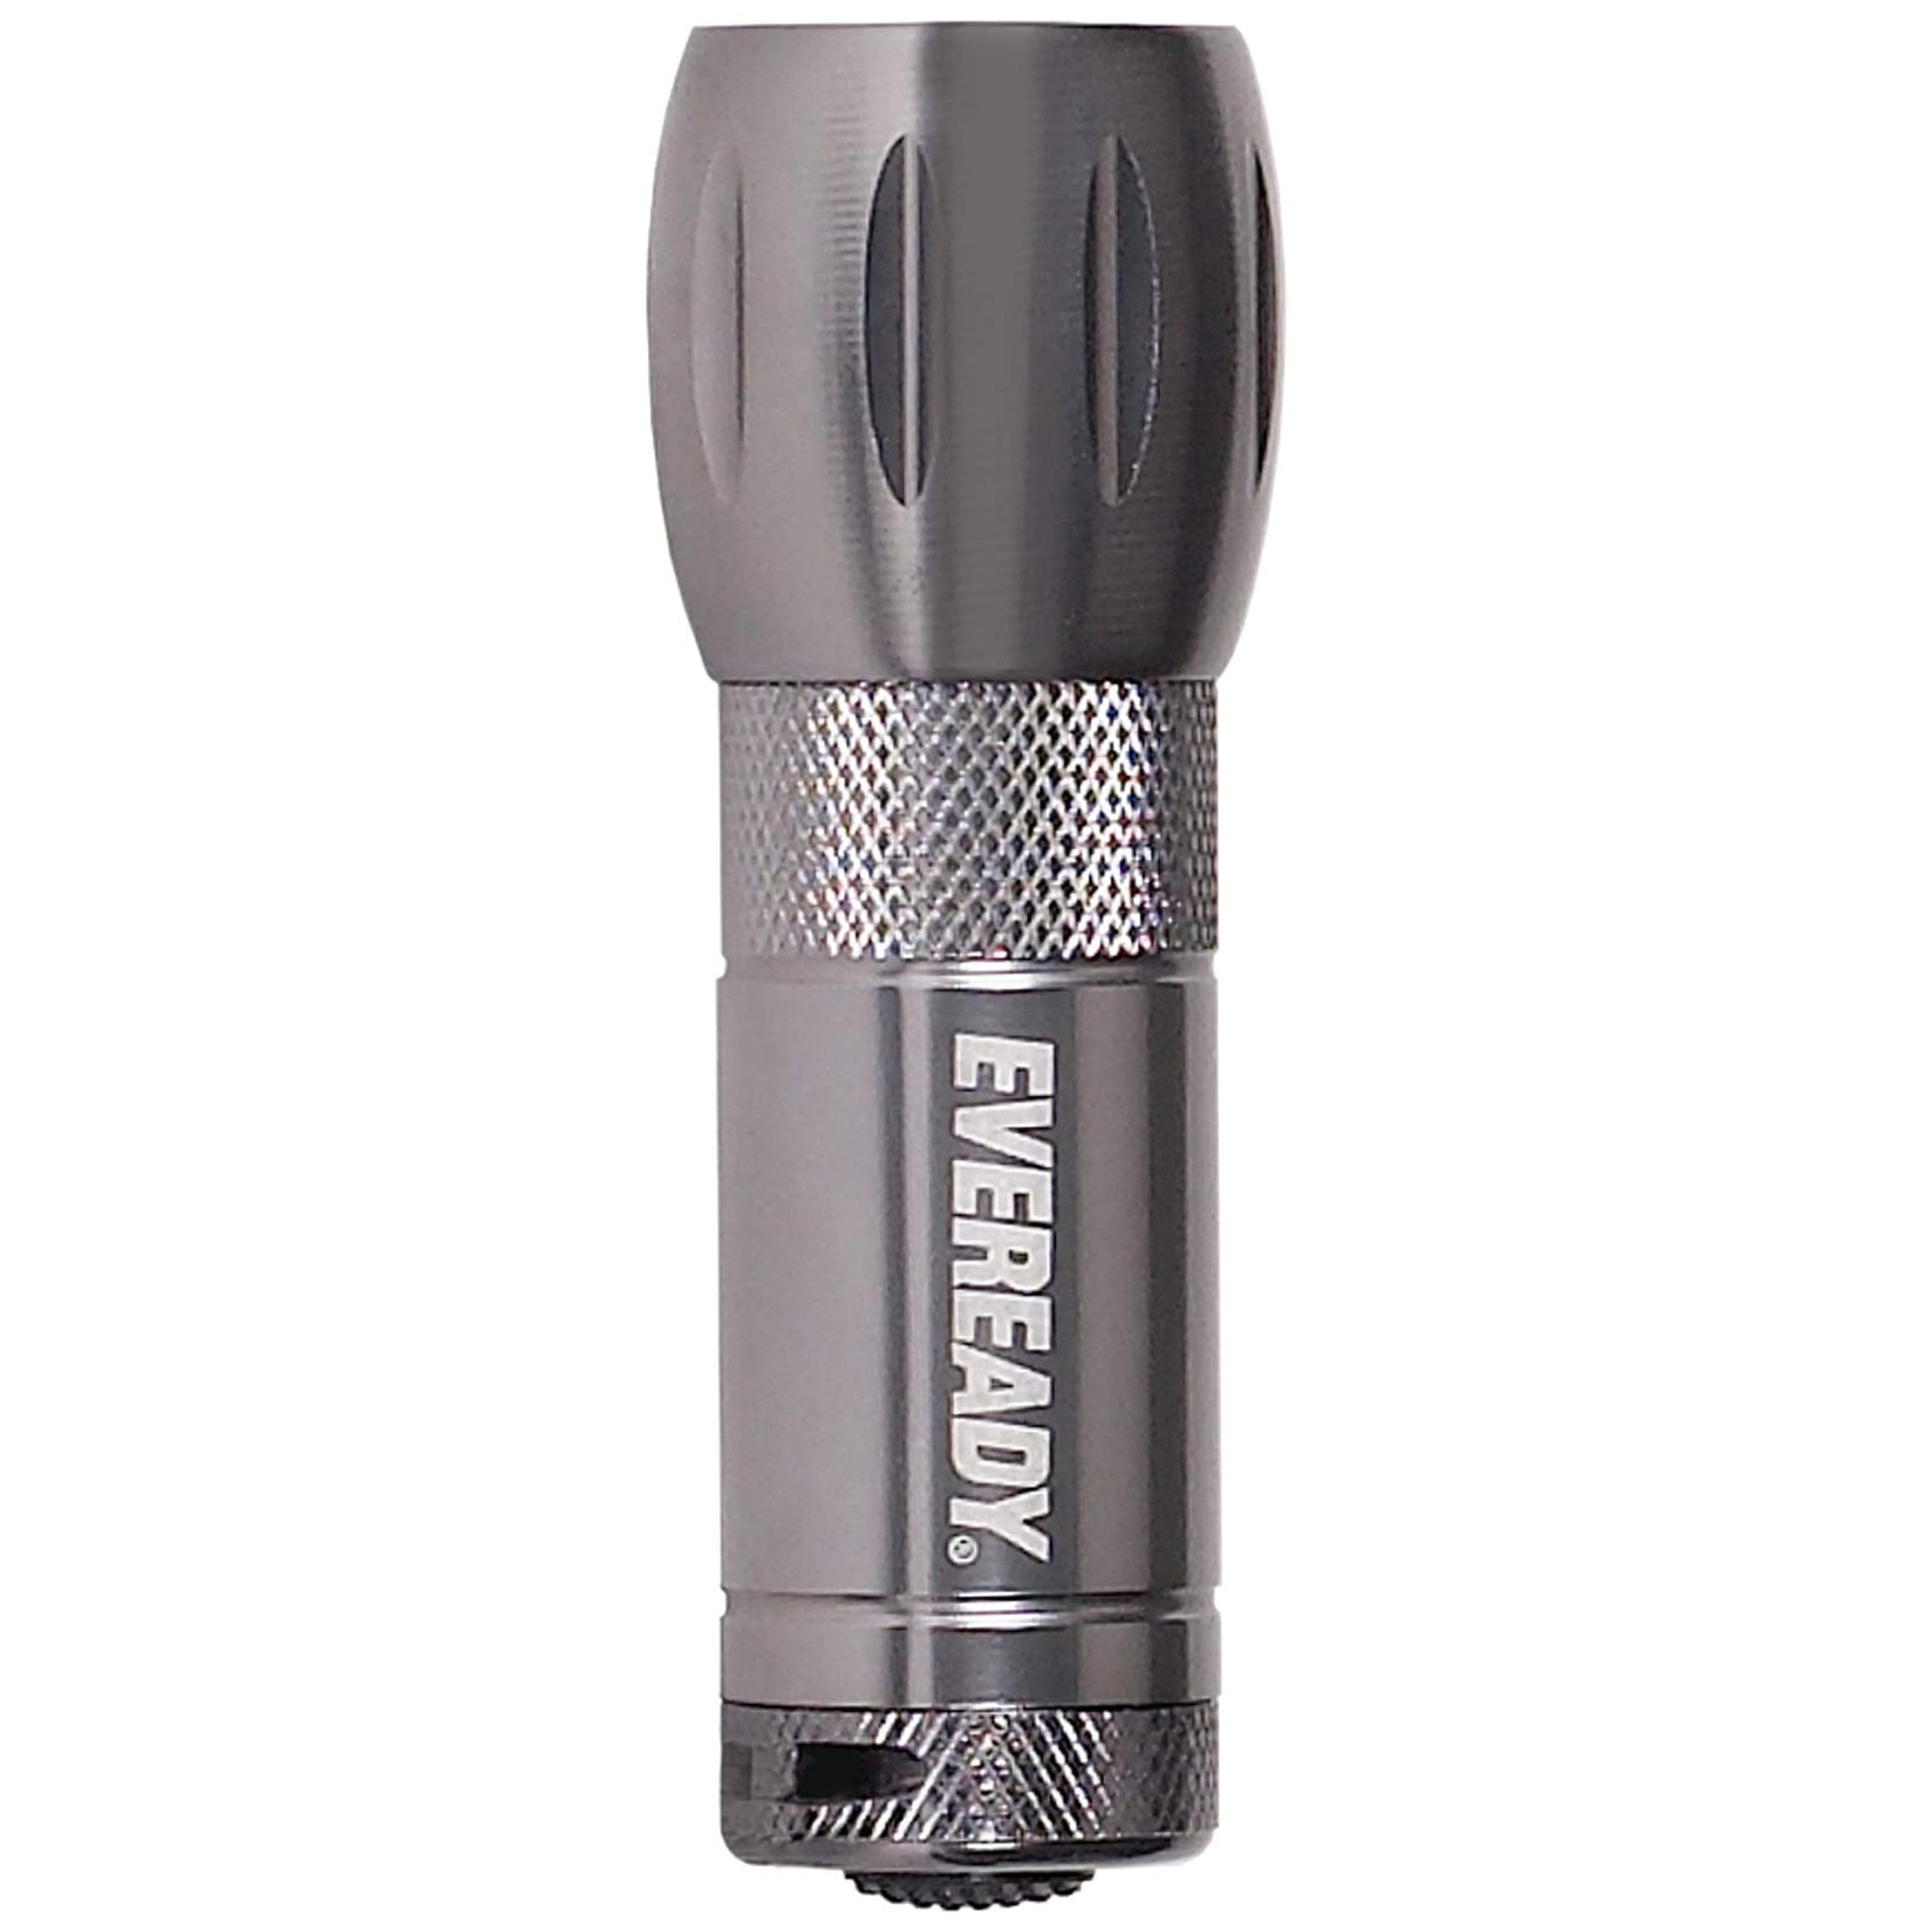 Eveready 12953 - Outdoor Style Eveready / Energizer Flashlight